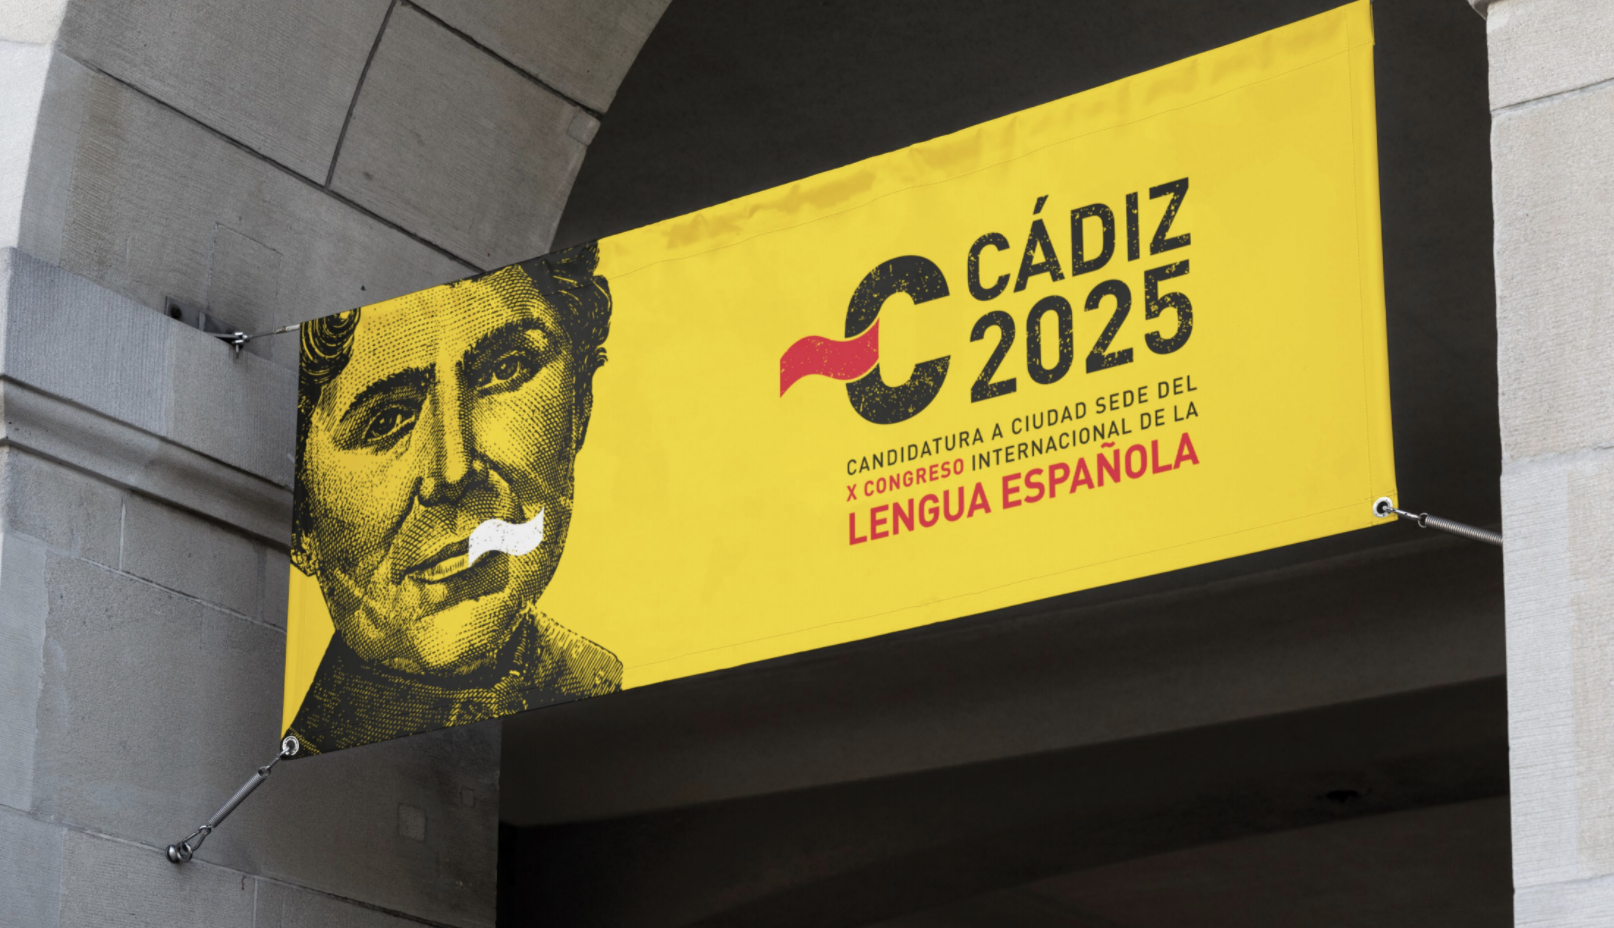 Imagen de Cádiz para acoger el X Congreso de la Lengua Española.